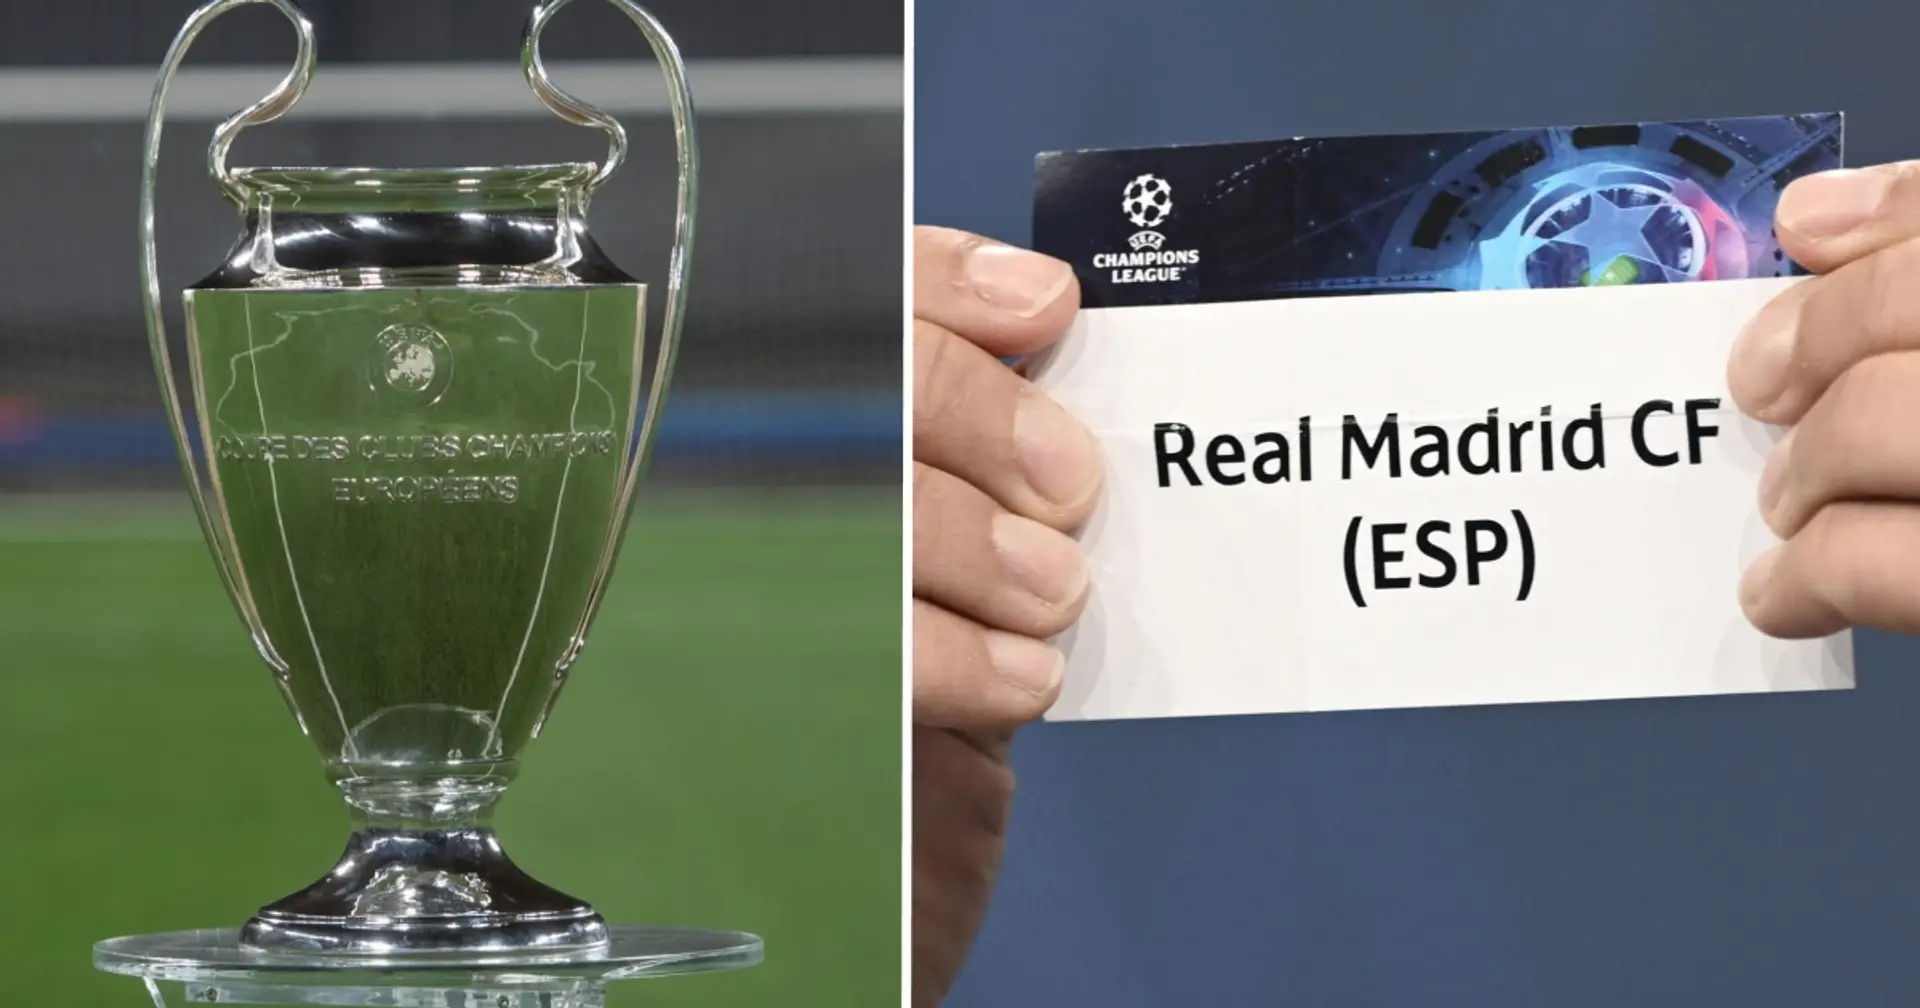 ¿A quién se enfrentará más probablemente el Real Madrid en los octavos de la Champions? Supercomputadora responde